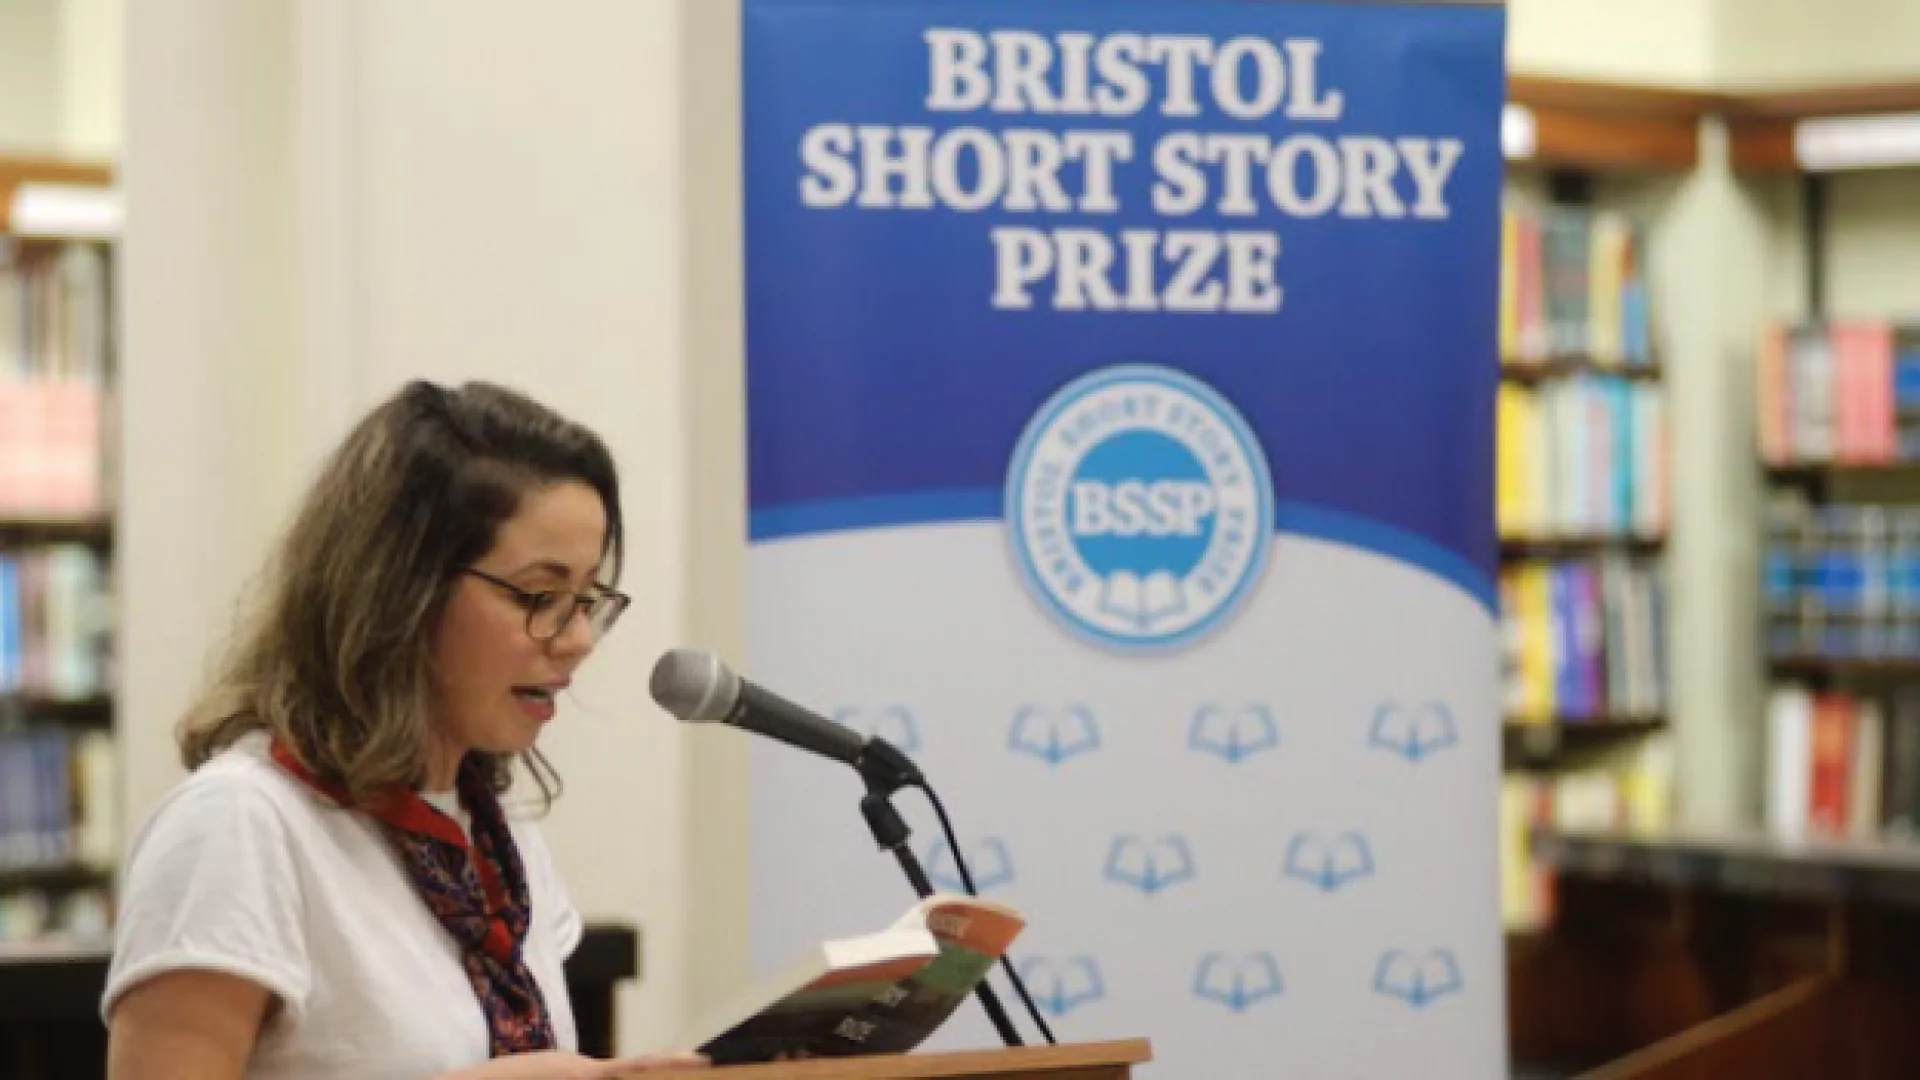 Ijodkor va havasmand yozuvchilar uchun Bristol Short Story Prize hikoyalar tanlovi. Bosh mukofot — 1000£